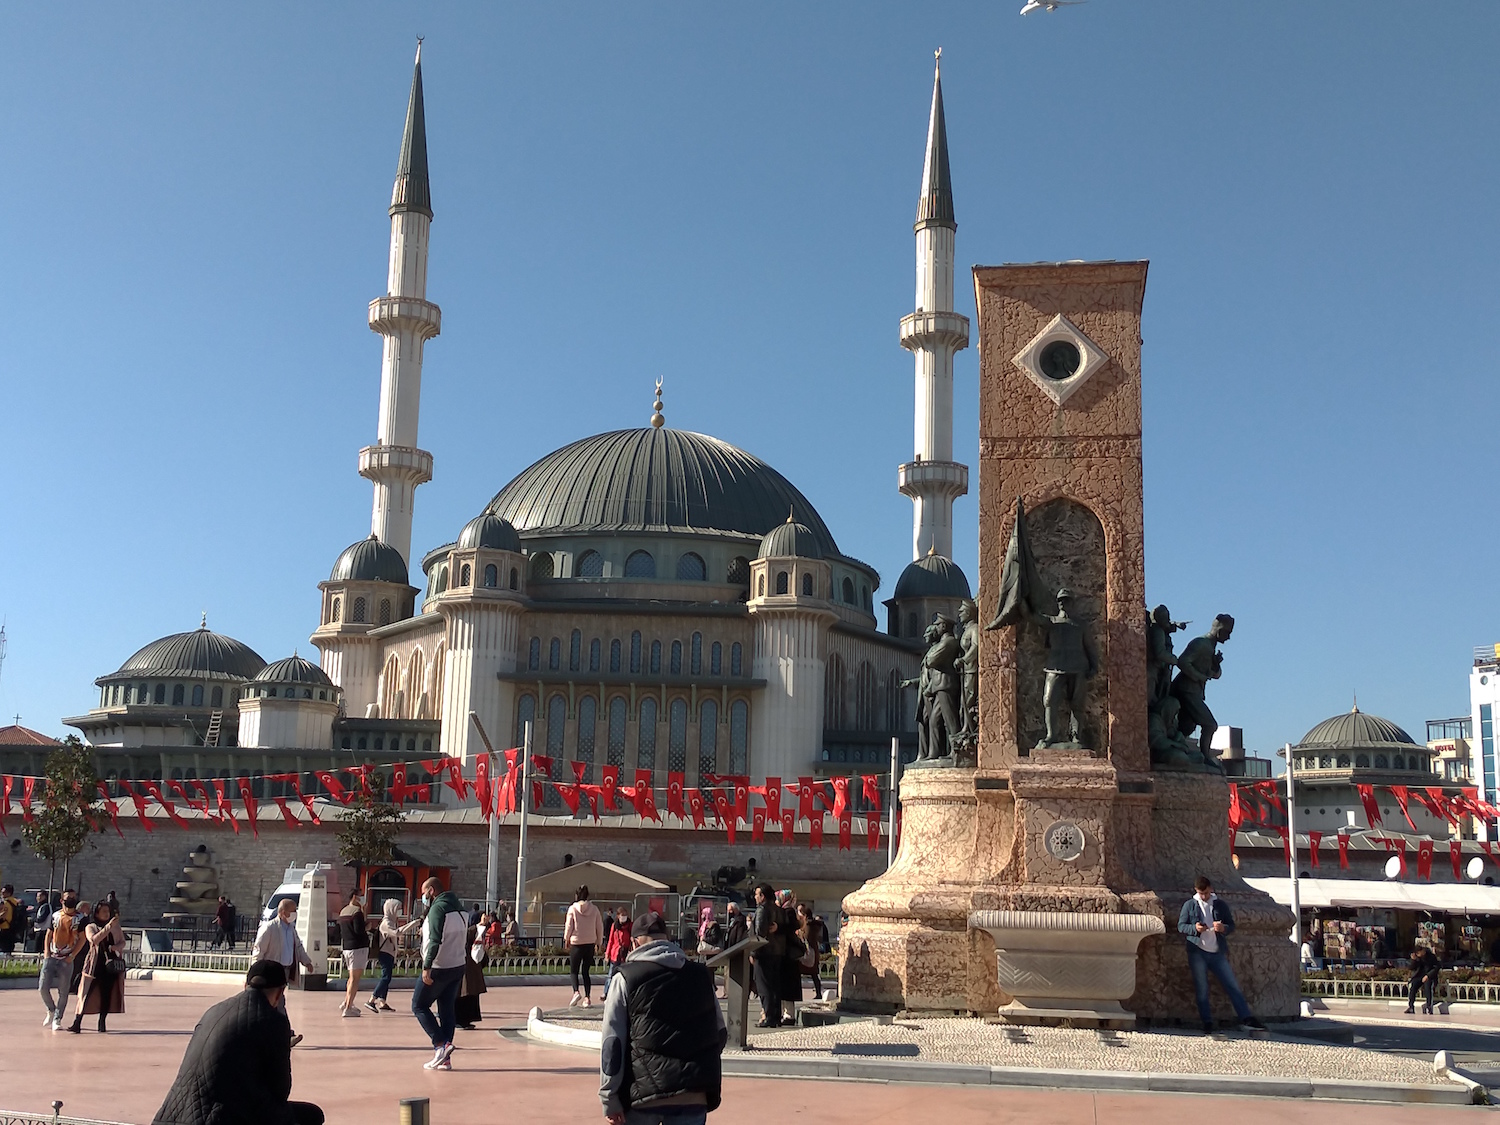 Cœur battant de la rive européenne d’Istanbul, la place Taksim a été le lieu, à l’été 2013, de manifestations géantes antigouvernementales, violemment réprimées. On y voit aujourd’hui la nouvelle mosquée, voulue par le président islamo-conservateur Recep Tayyip Erdogan, côtoyer le monument de la Libération, hommage aux combattants de la guerre d’indépendance menée par Mustafa Kemal Atatürk, le fondateur de la Turquie moderne, au lendemain de la Première guerre mondiale. © Globe Reporters